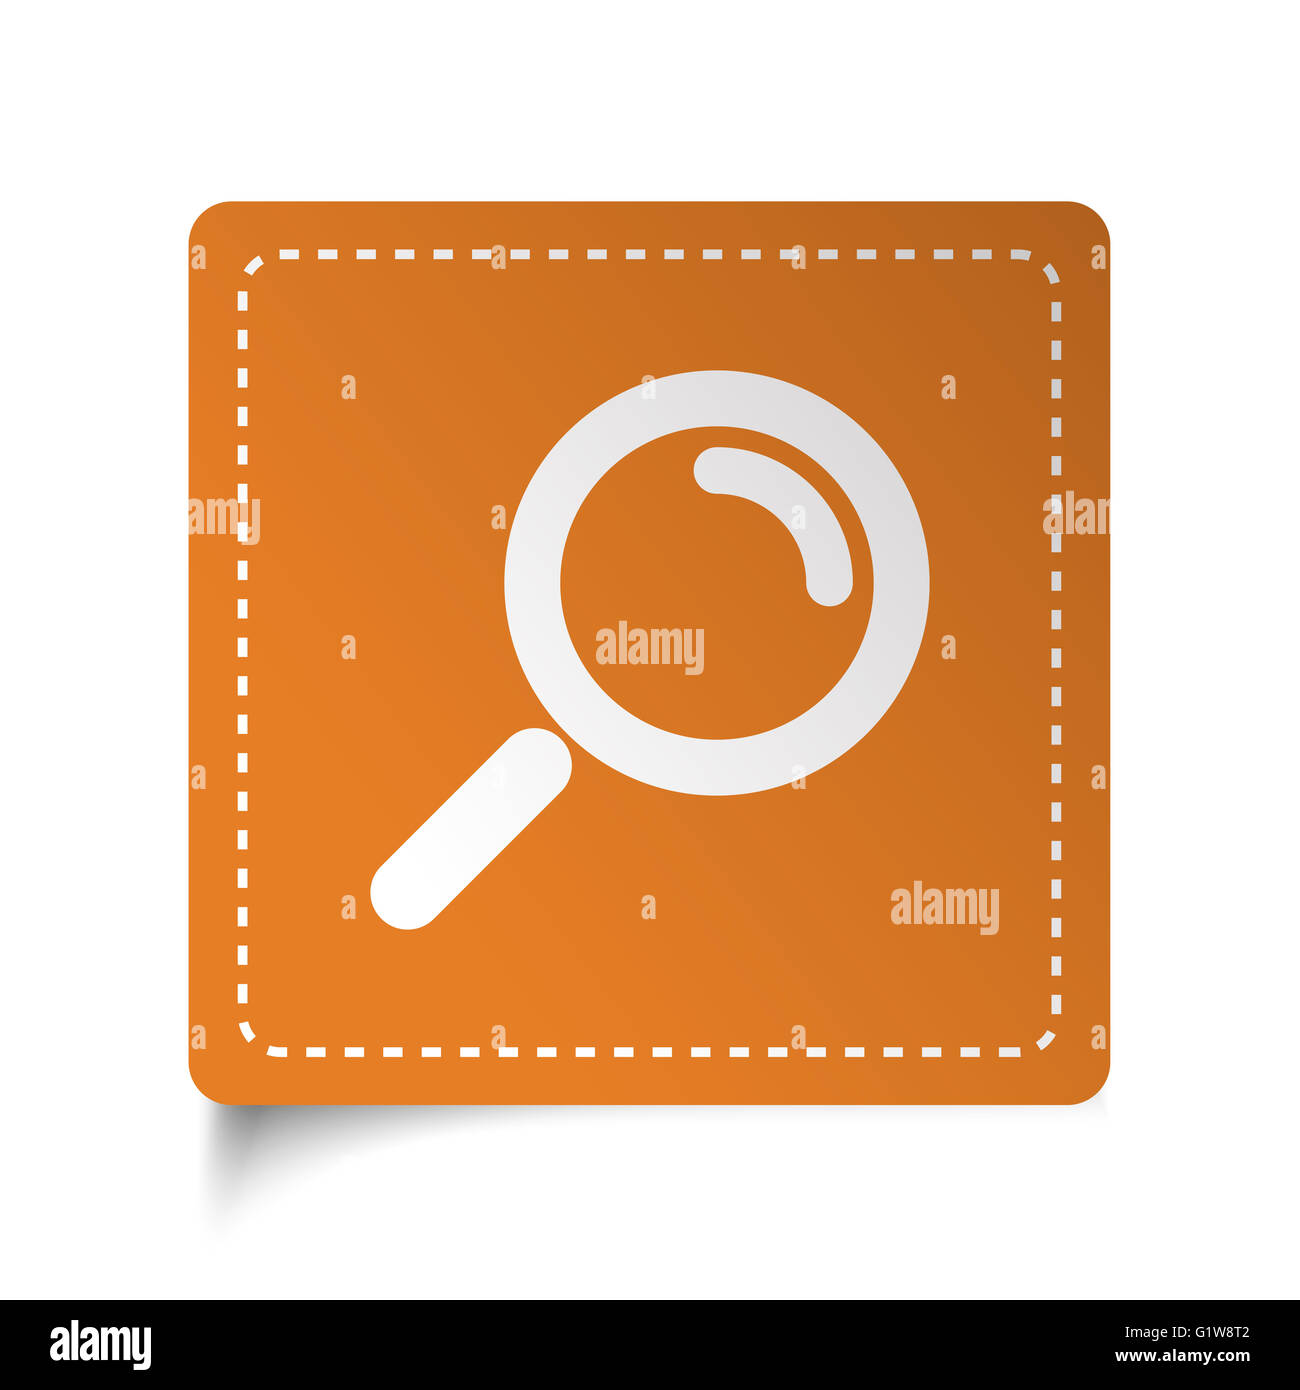 Plat blanc en forme de loupe située sur l'étiquette orange Banque D'Images